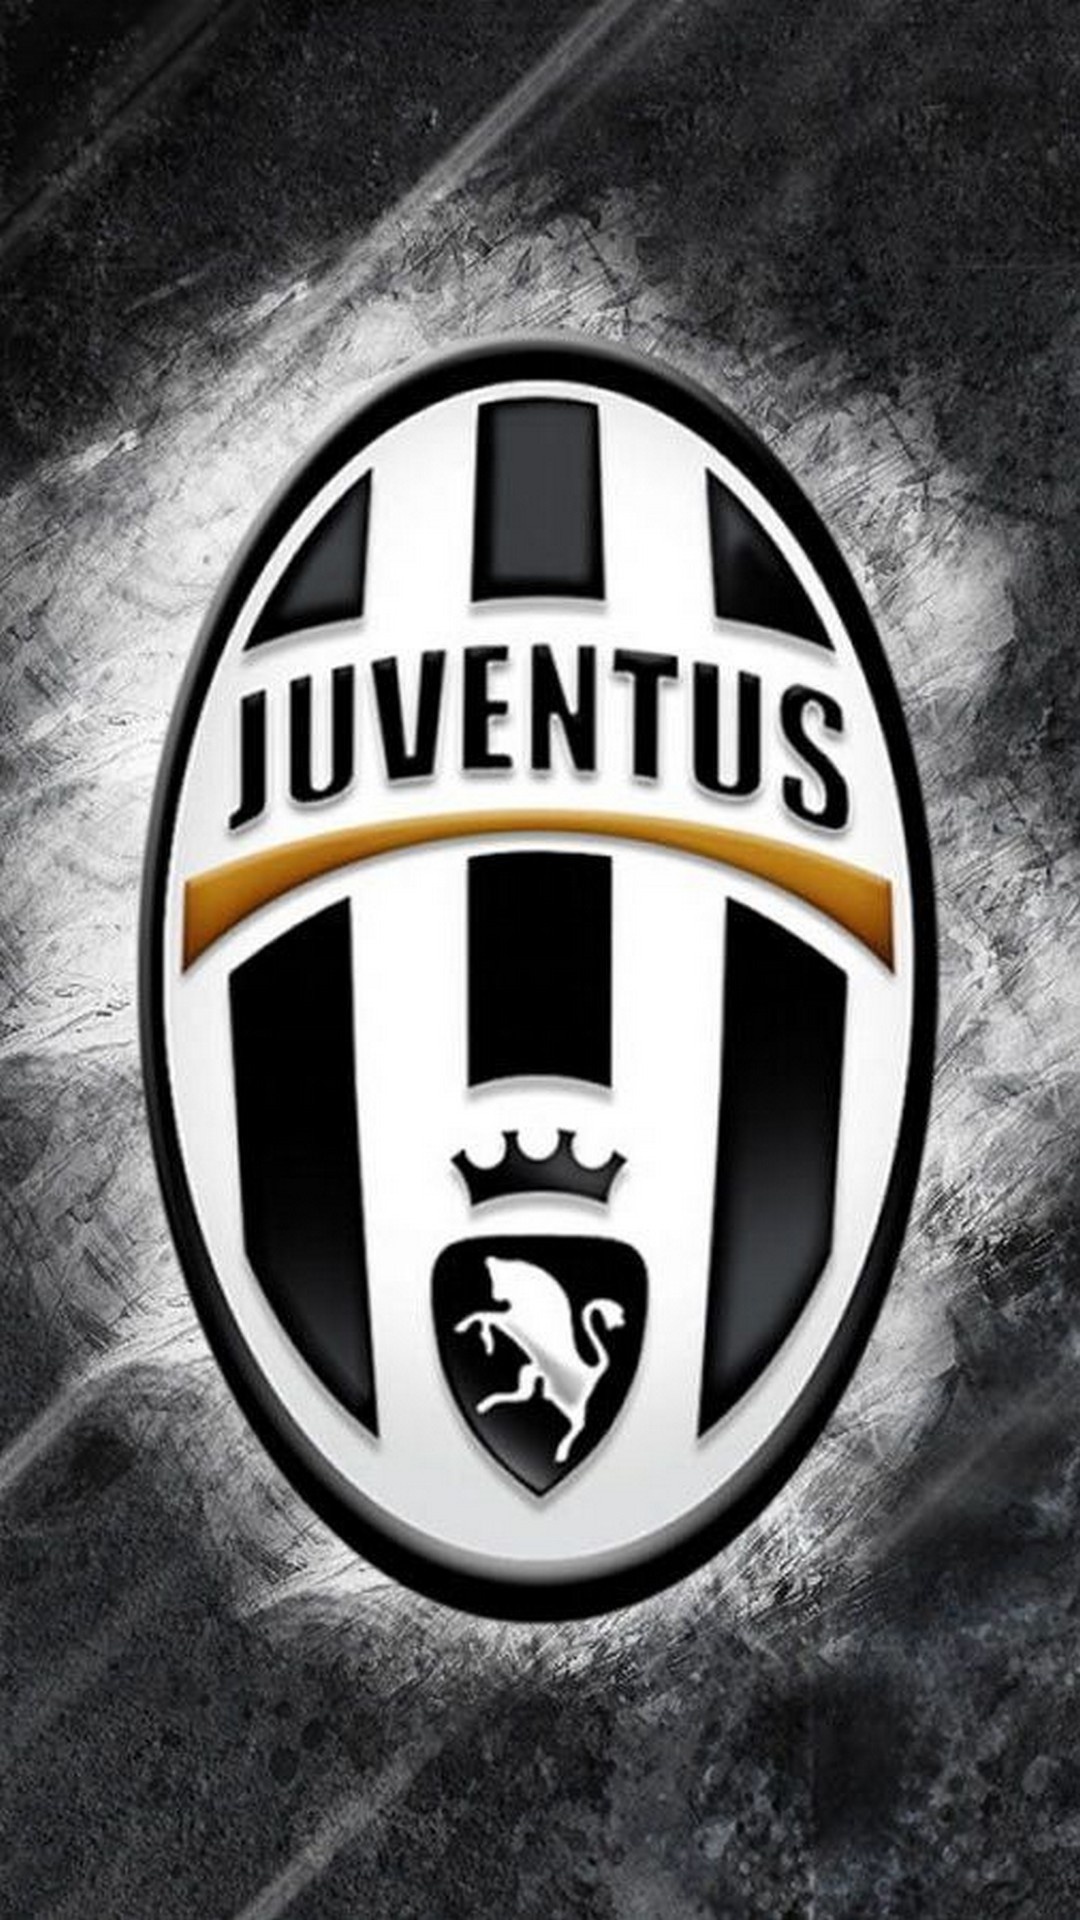 Juventus Logo, 3D iPhone wallpaper, High-resolution design, Team spirit, 1080x1920 Full HD Handy